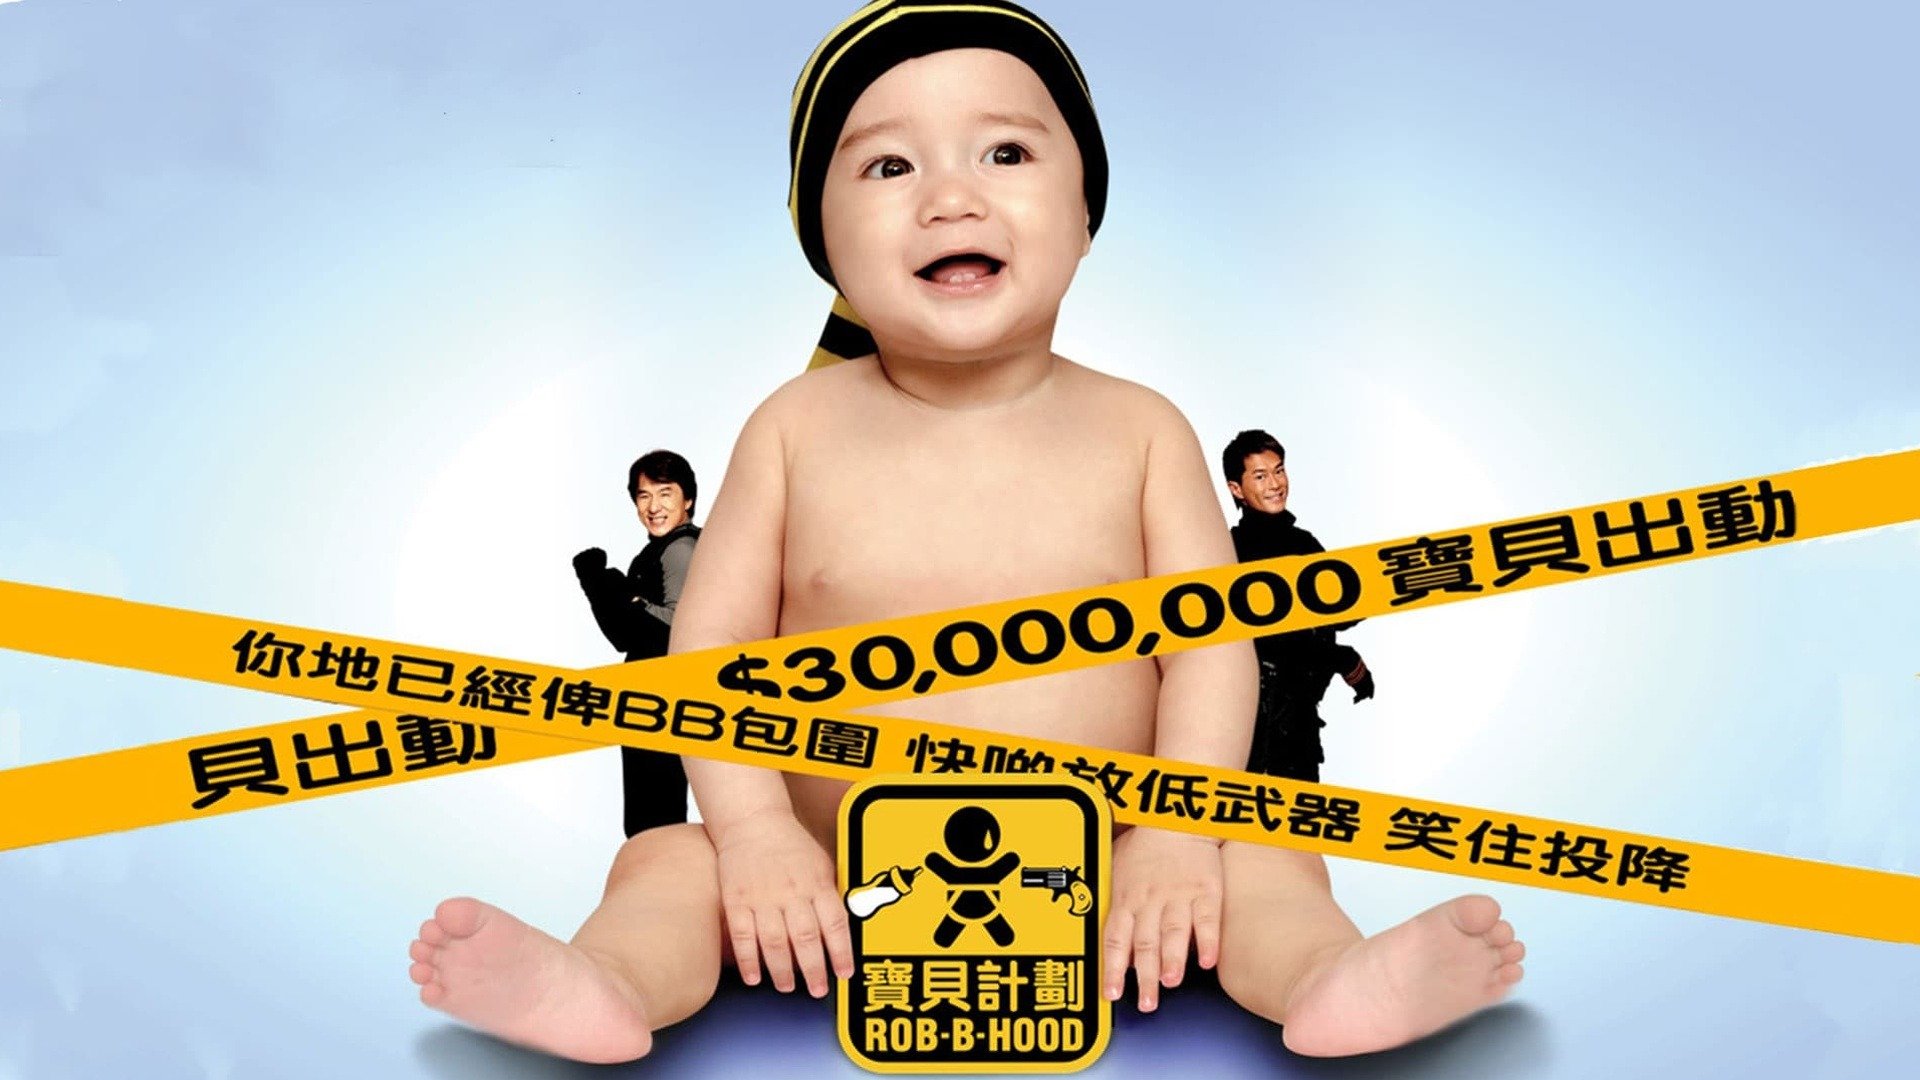 3 000 на ребенка. Джеки Чан младенец на $30 000 000. Джеки Чан малыш на 30 миллионов. Малыш на миллион с Джеки Чаном.